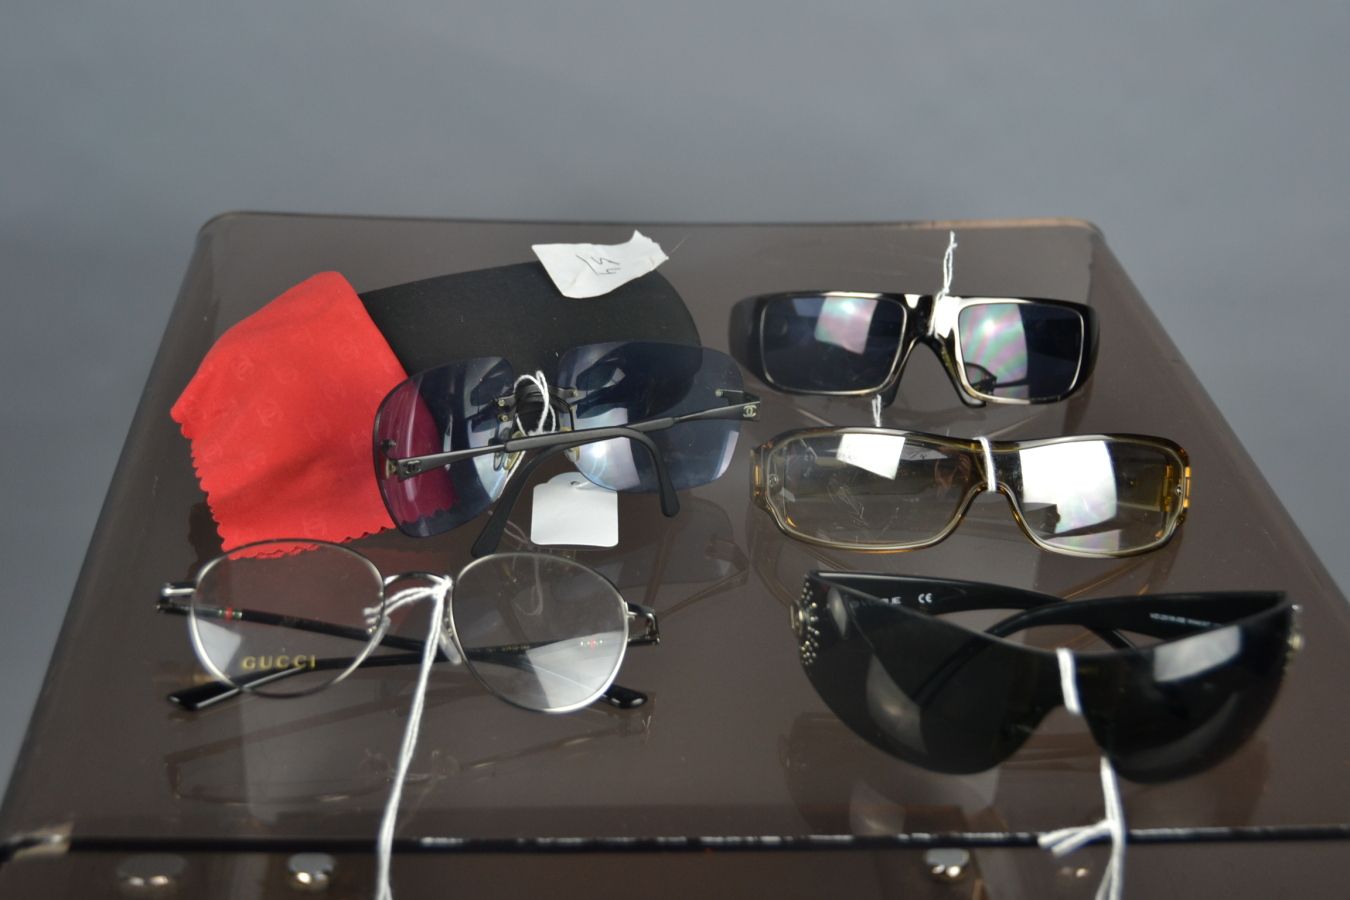 Null *很多眼镜，包括:

香奈儿

- 一副太阳镜，蓝色镜片和它的盒子

理事长

- 一副黑色塑料太阳镜

VOGUE

- 一副黑色塑料太阳镜

GU&hellip;